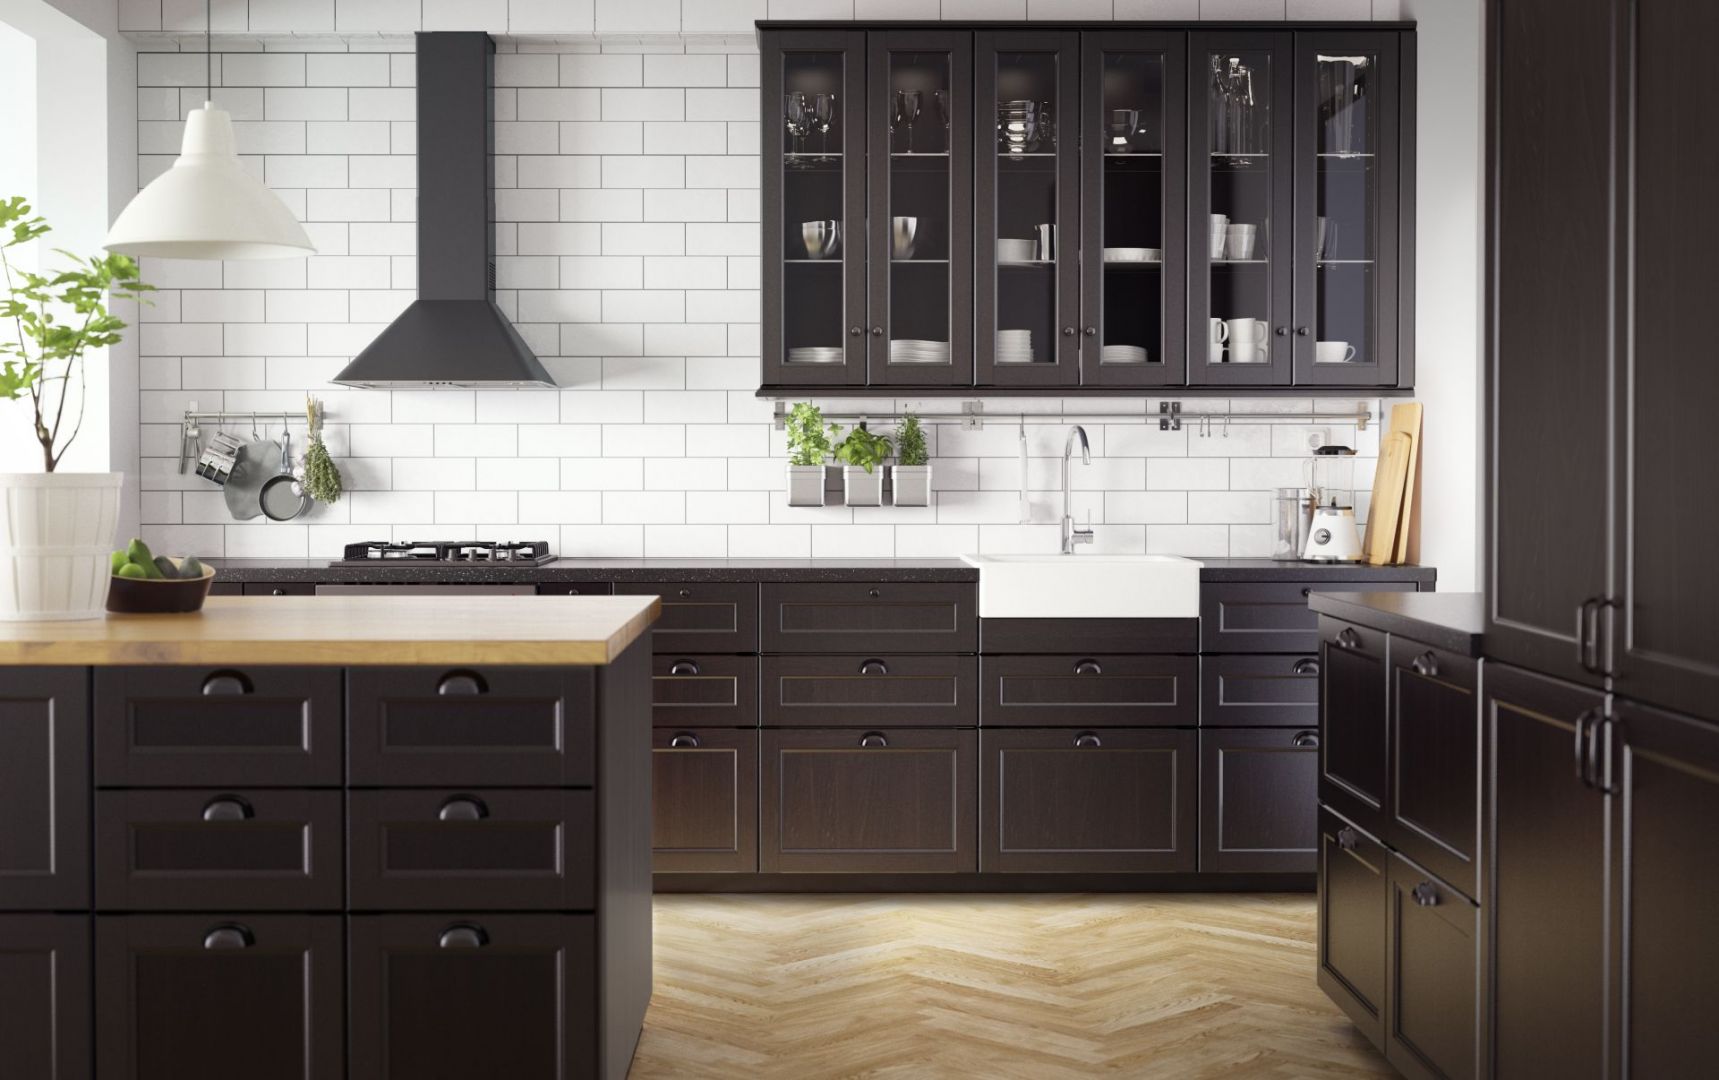 Elegancka czerń dobrze prezentuje się na klasycznych frontach kuchennych z ramiakami. Dla rozjaśnienia aranżacji warto połączyć tą barwę z jasnym kolorem, np. w postaci jasnego, drewnianego blatu lub białymi płytkami na ścianach. Fot. IKEA